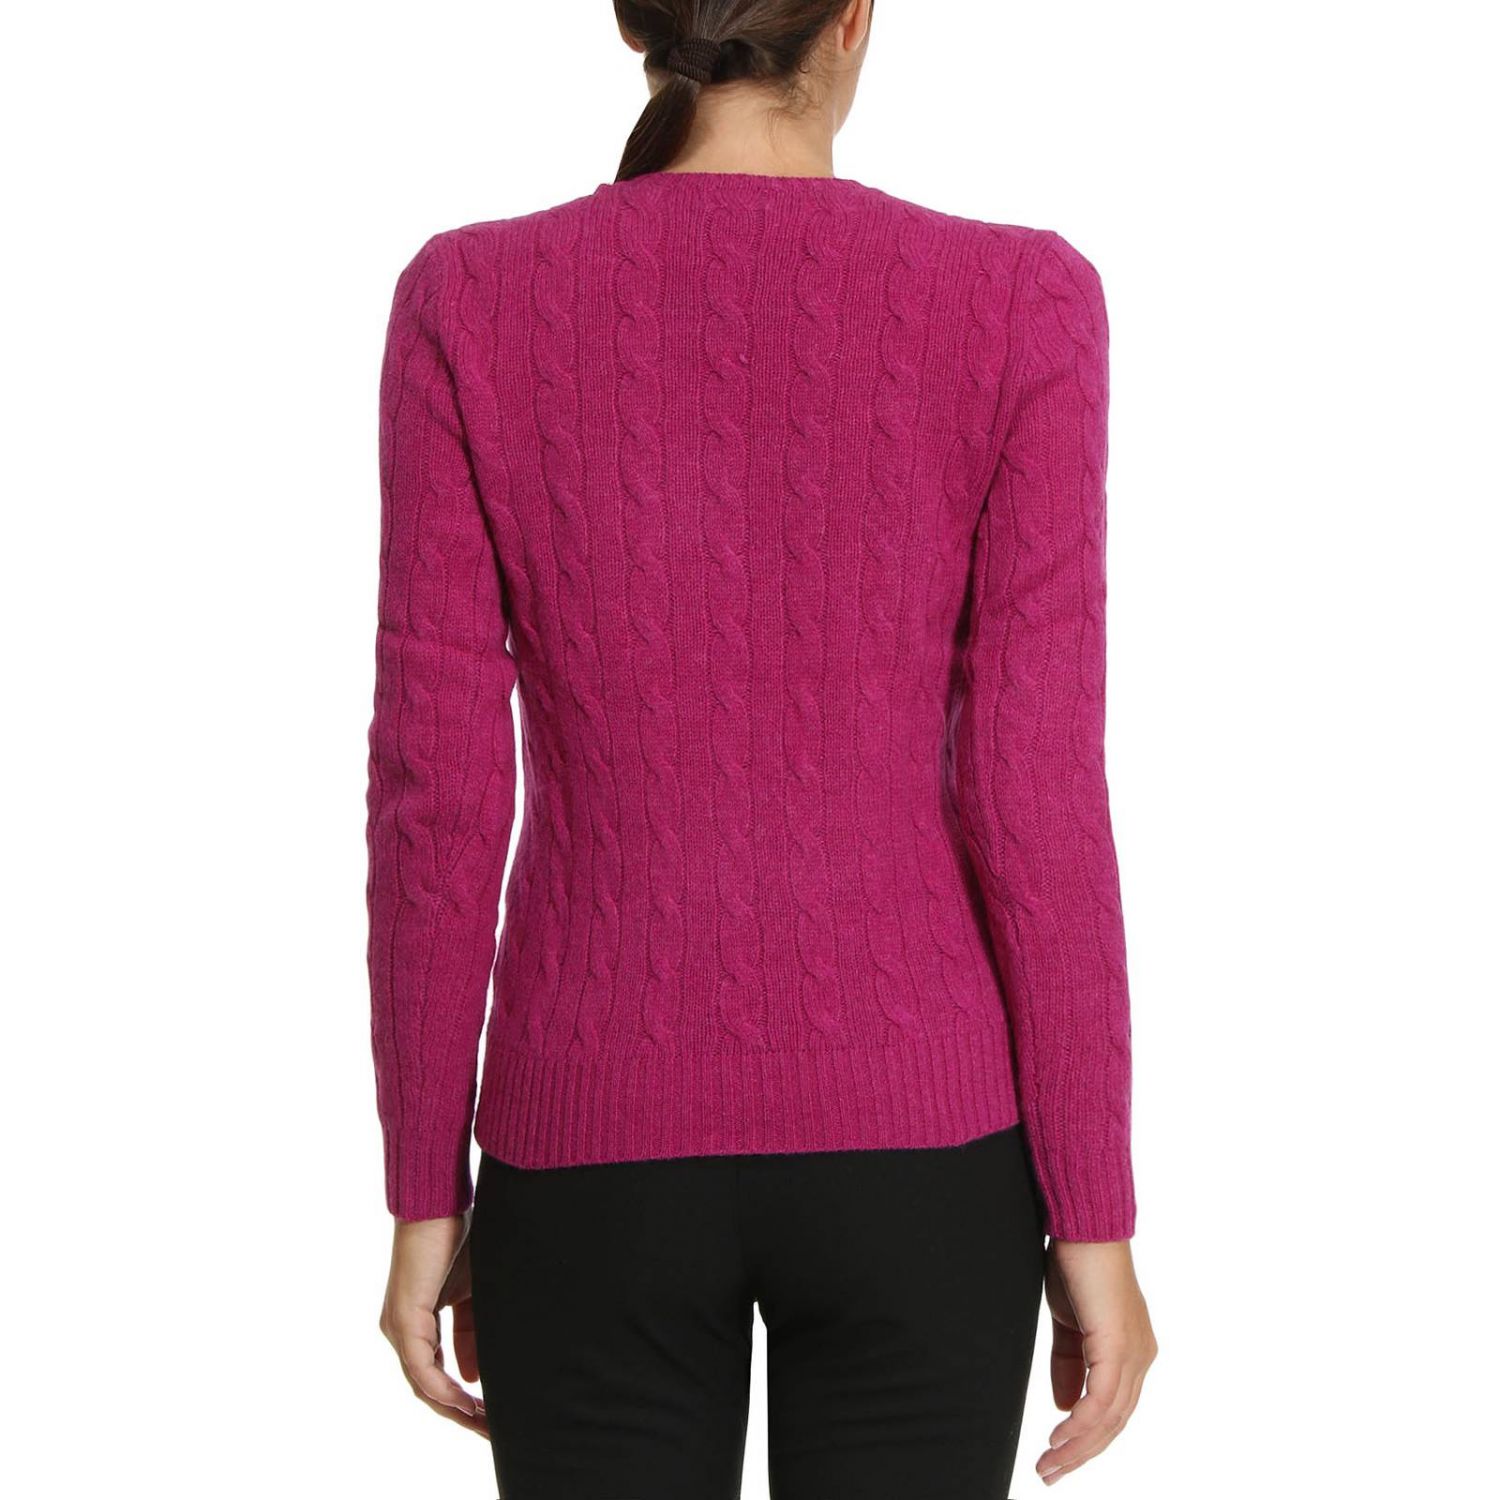 Polo Ralph Lauren Outlet: Sweater women | Sweater Polo Ralph Lauren ...